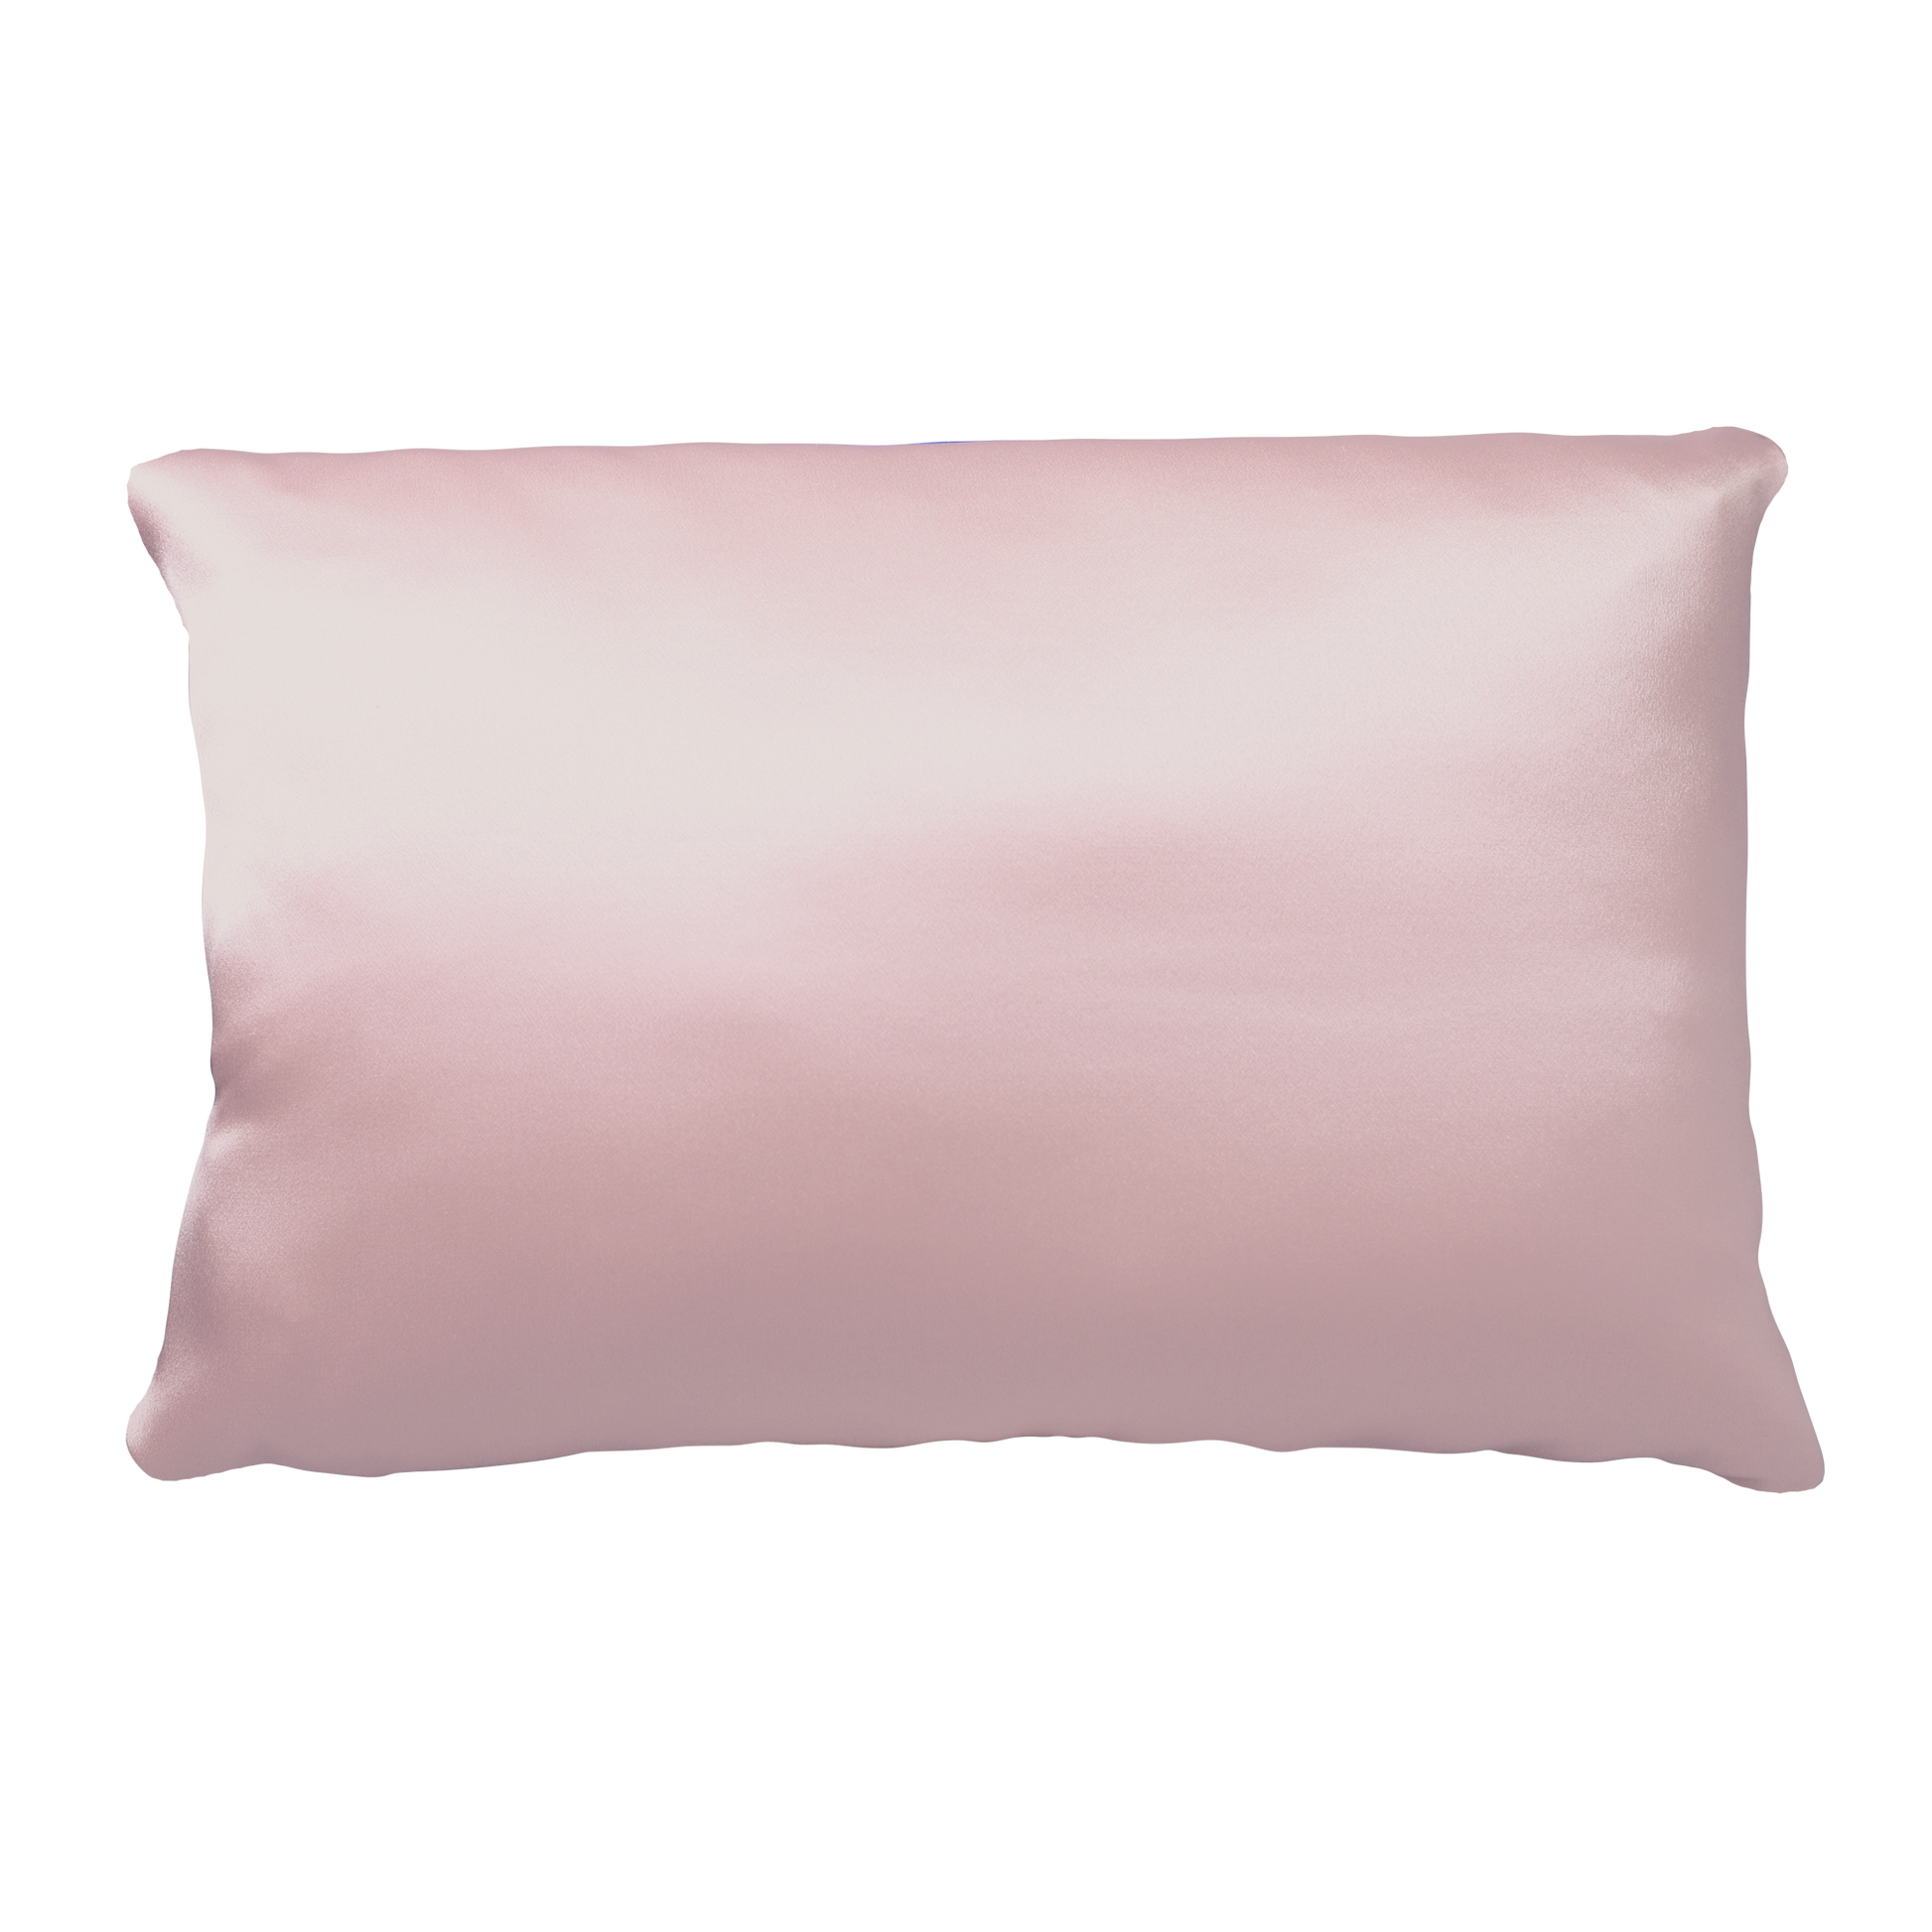 5008-PCROSE?silversilk pillowcase in rose